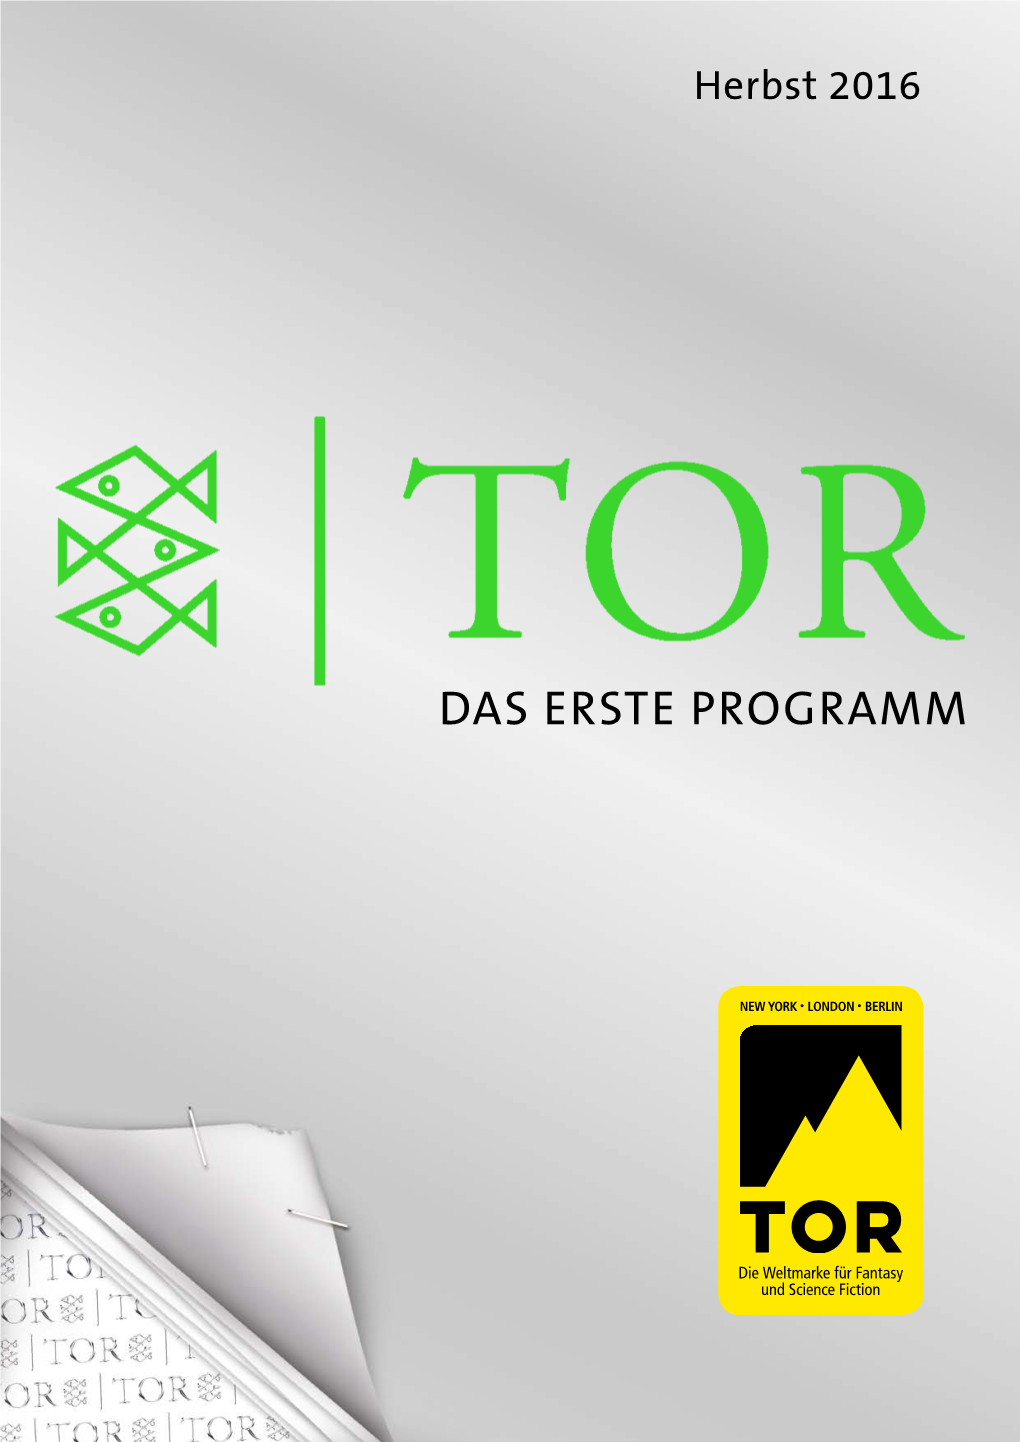 Fischer TOR Programmvorschau Herbst 2016